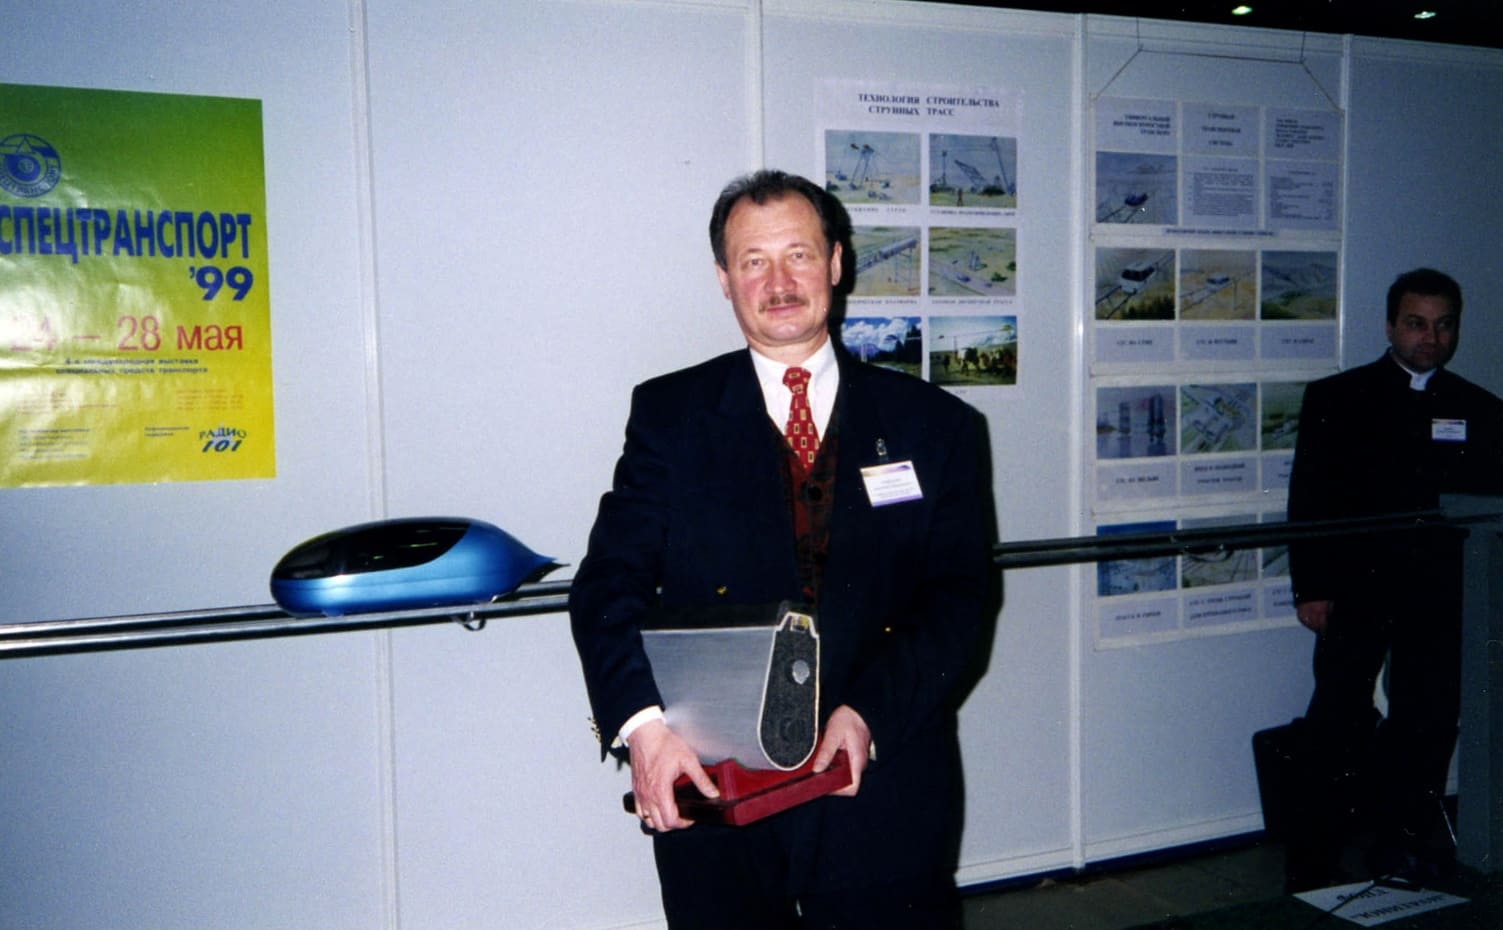 Выставка «Спецтранспорт–99». Май 1999 г.